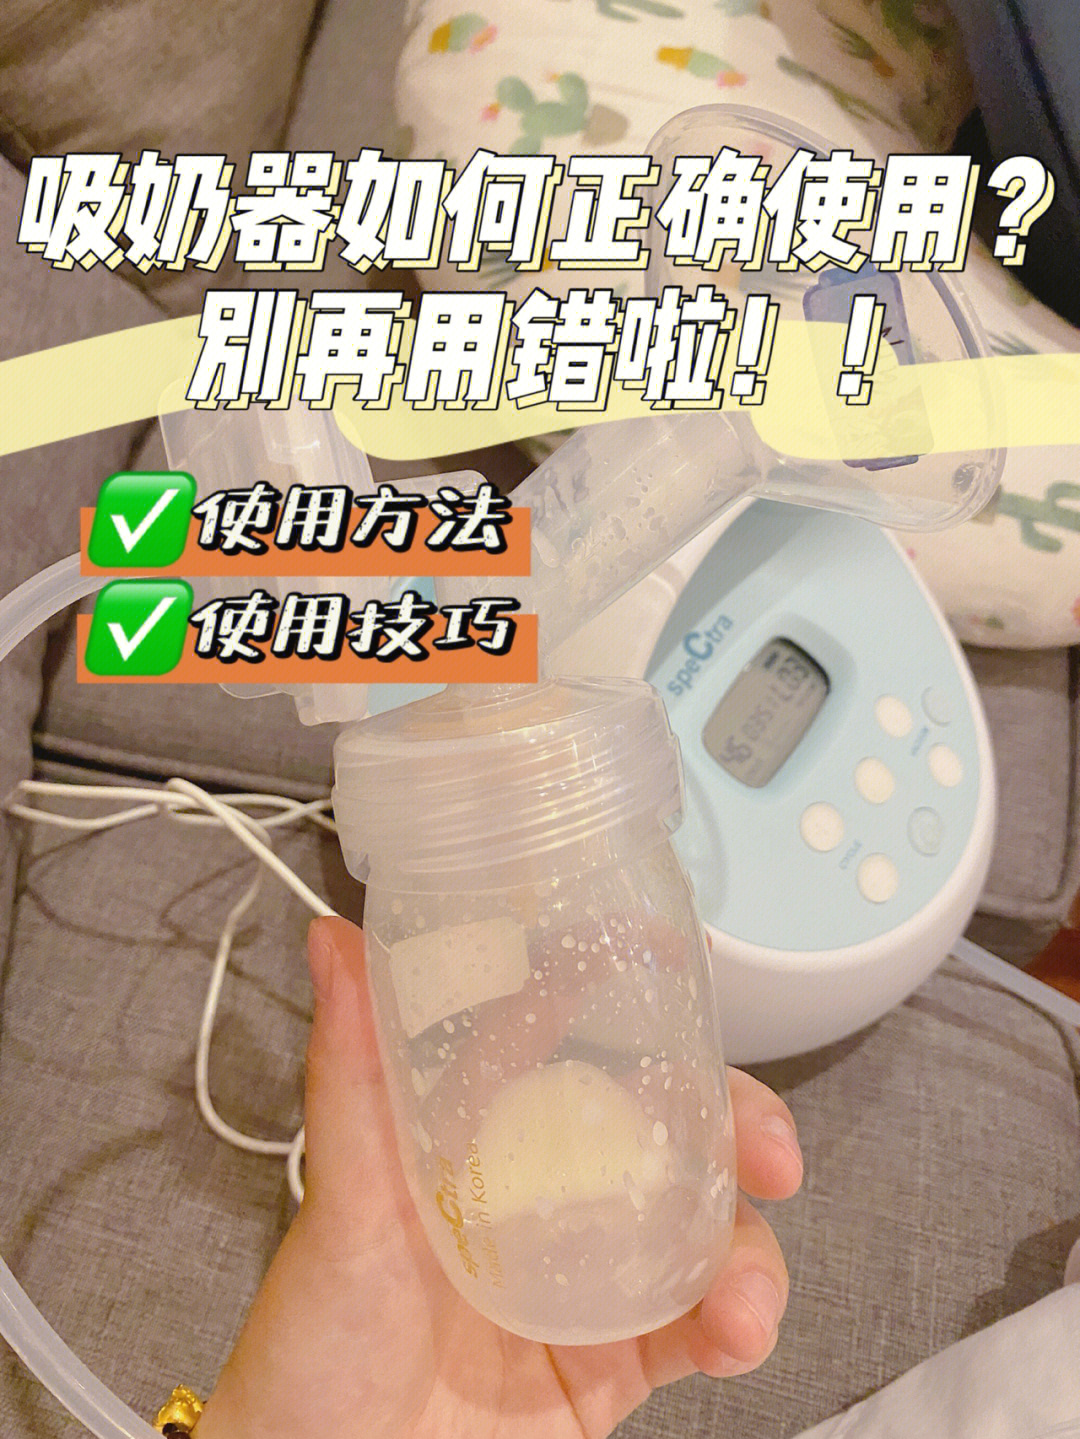 避免形成涨奶或乳腺炎;也能够帮助奶水不足的妈妈涨奶,勤用吸奶器吸奶